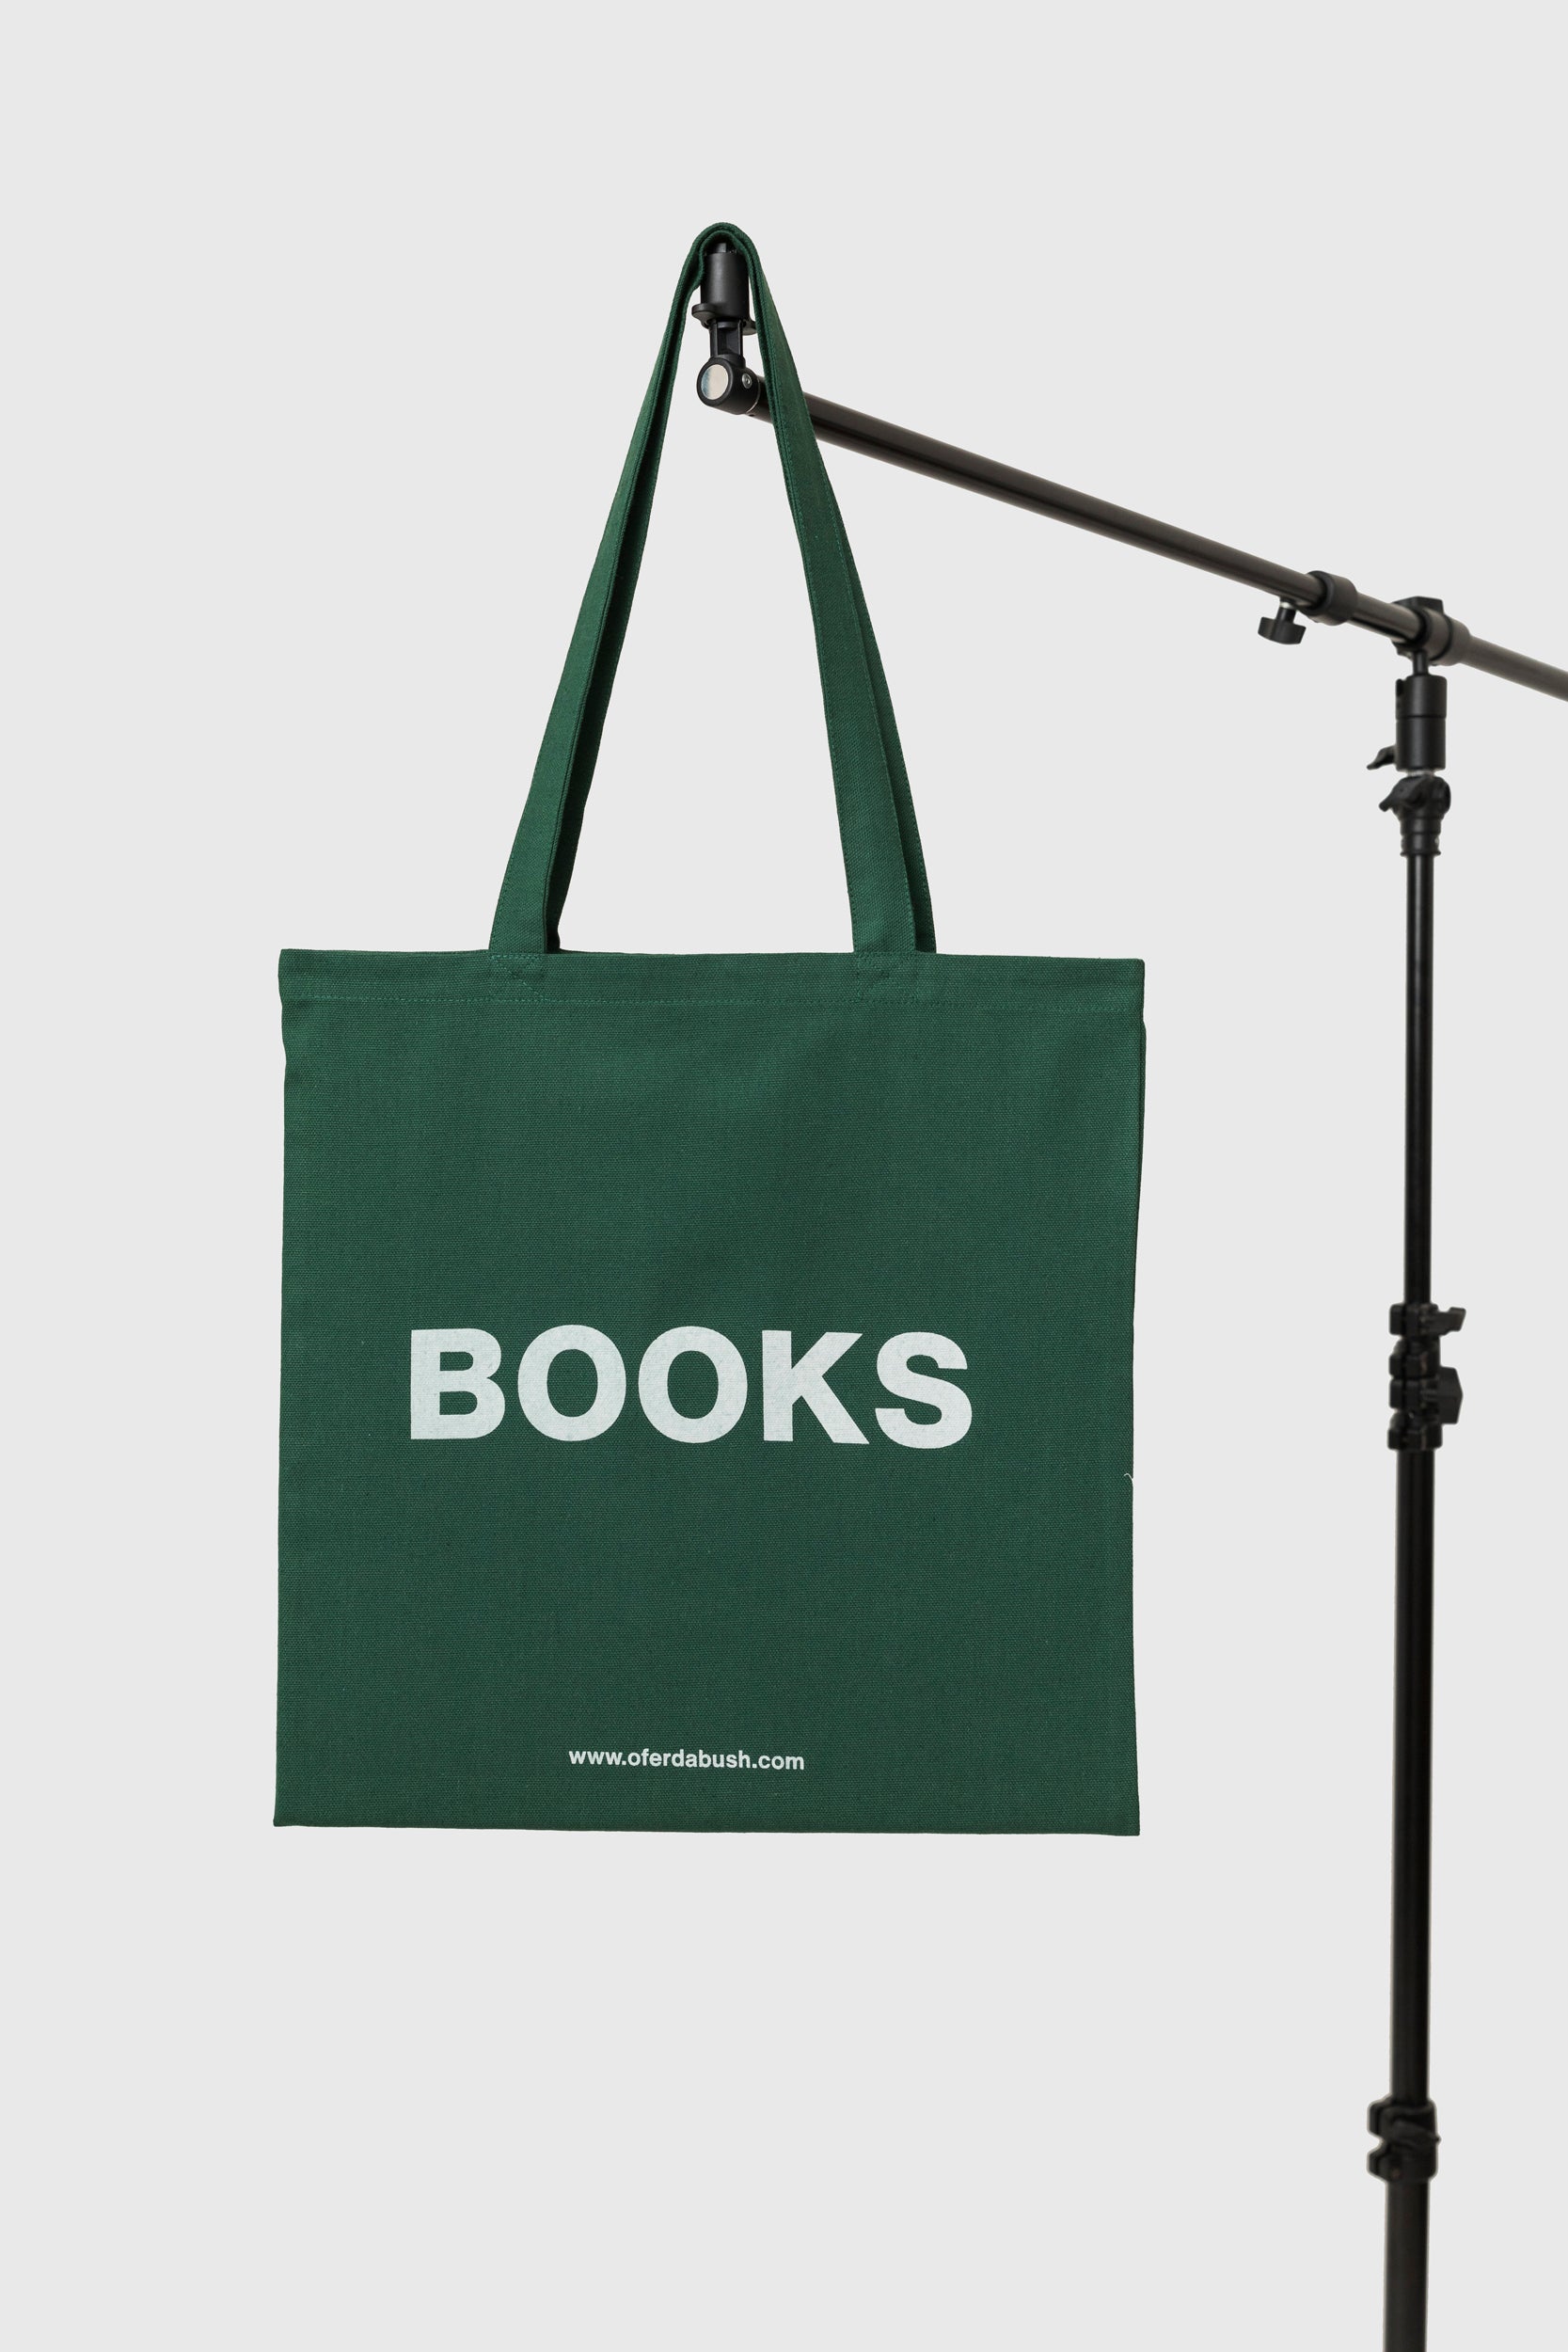 Ofer DABUSH TEL AVIV PUBLISHING PHOTO BOOKS T SHIRTS TOTE BAGSbooks/nudes tote bag